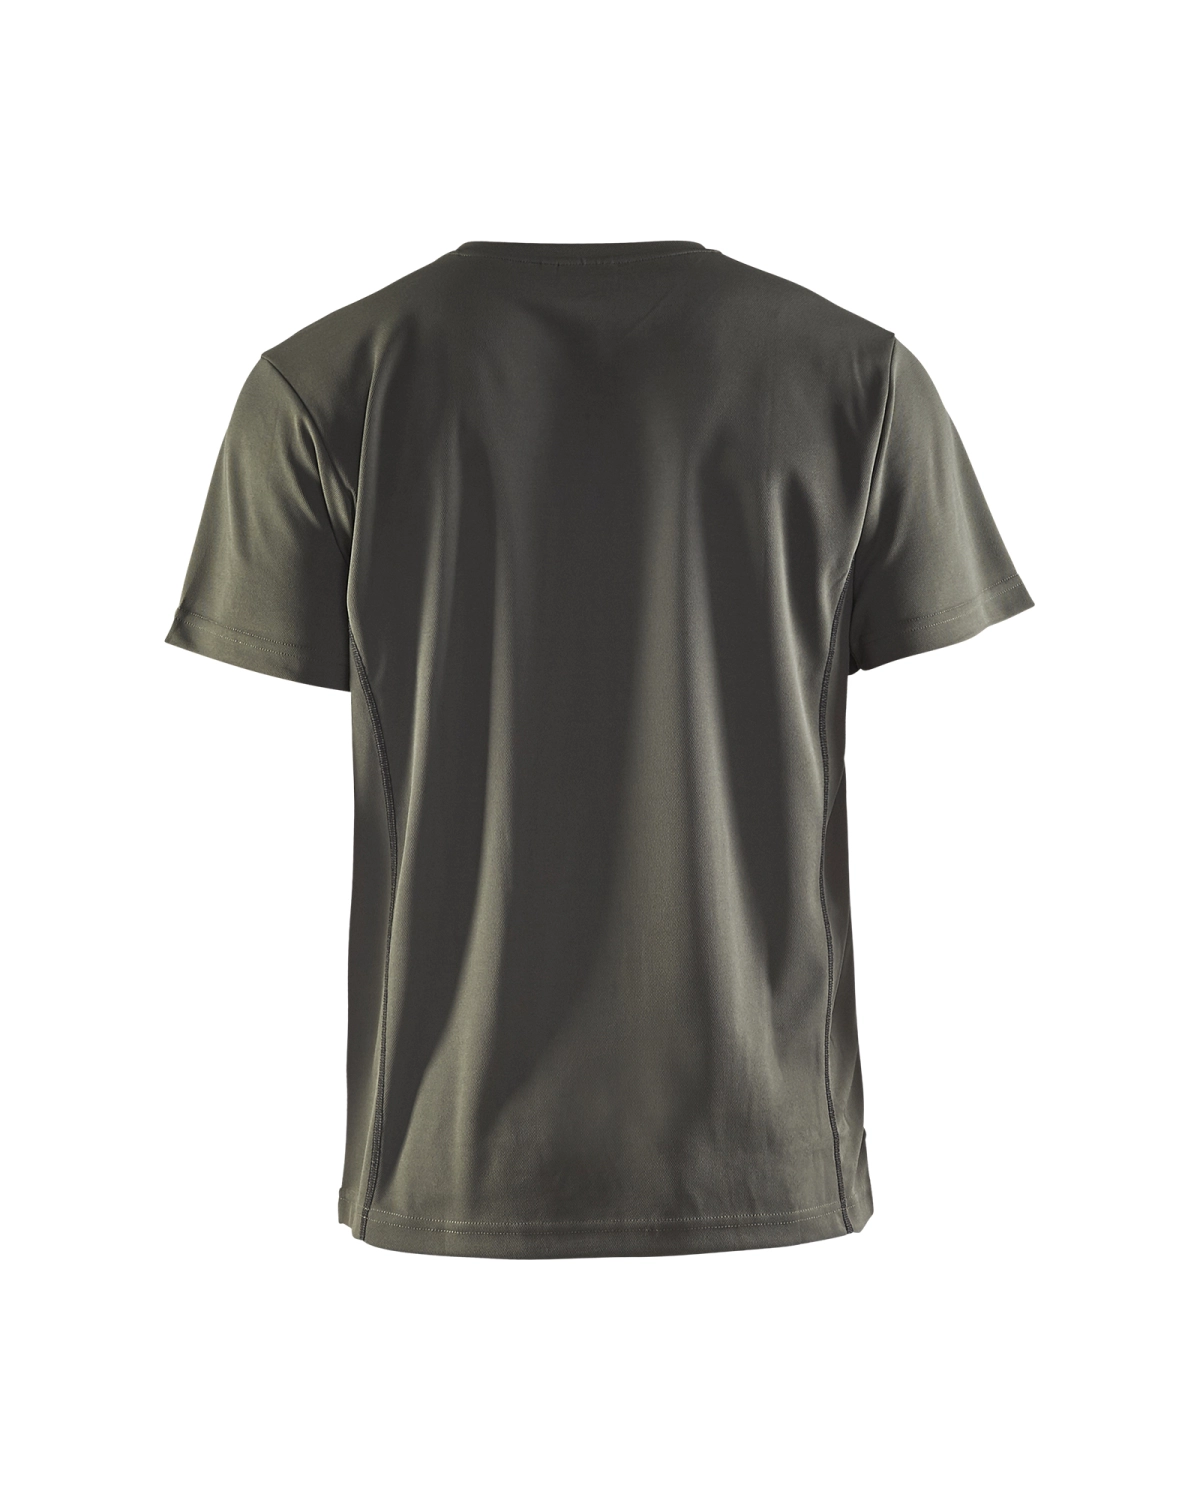 Blåkläder 3323 UV t-shirt - army groen - XXL